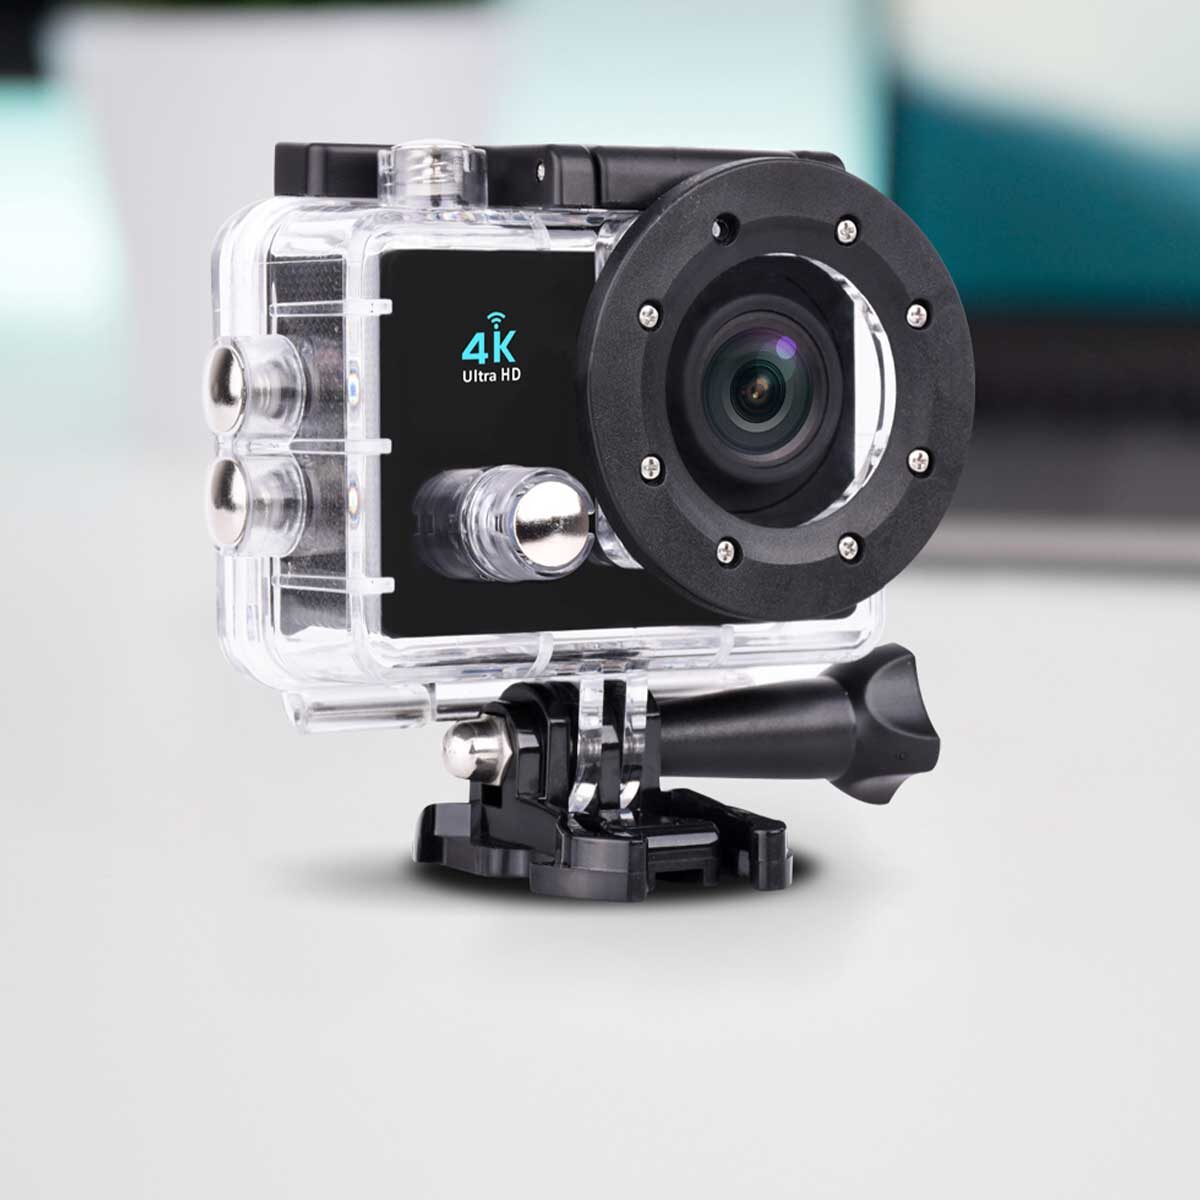 Pack caméra sport DV660+ Kit accessoires - PRIXTON